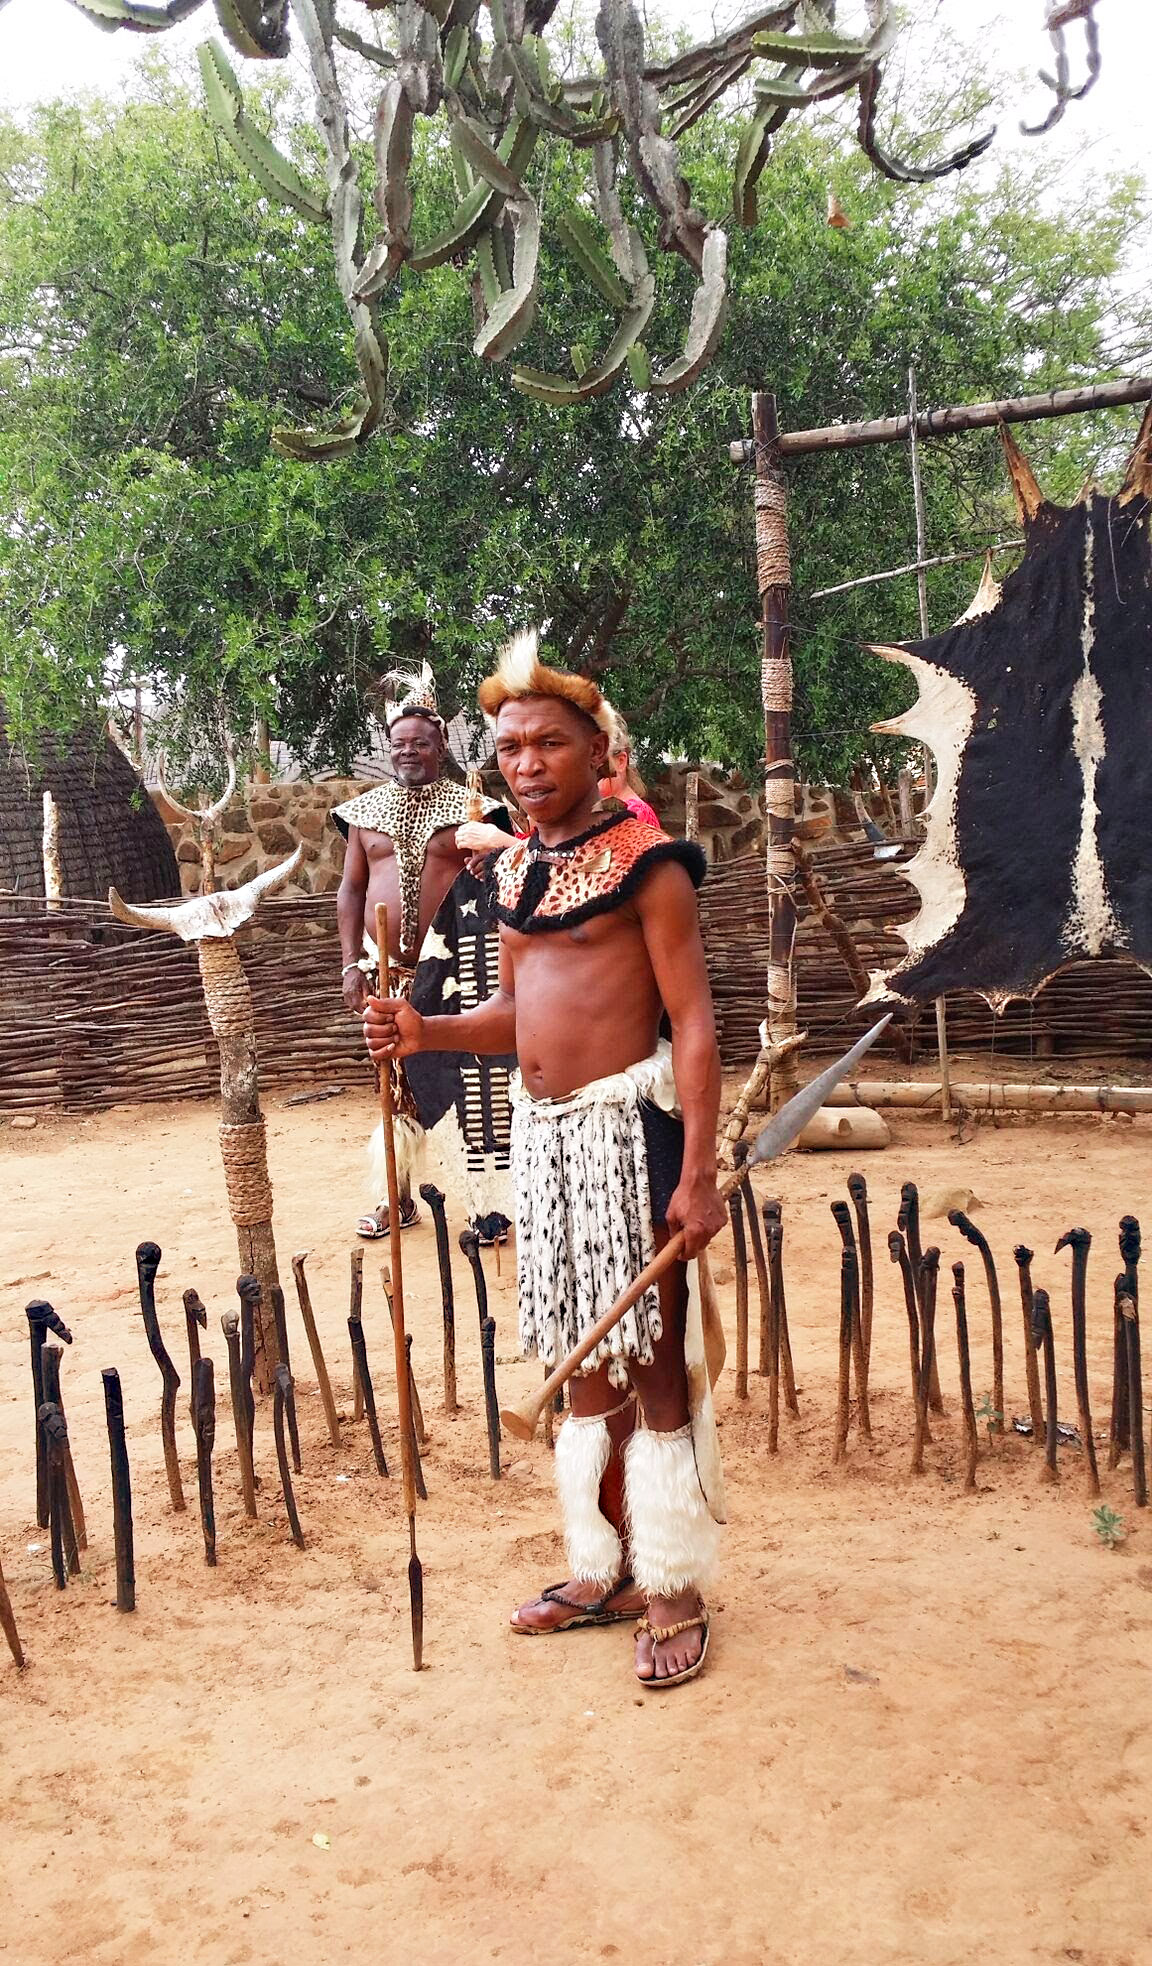 Shaka Zulu Land - Use of Short War Spear